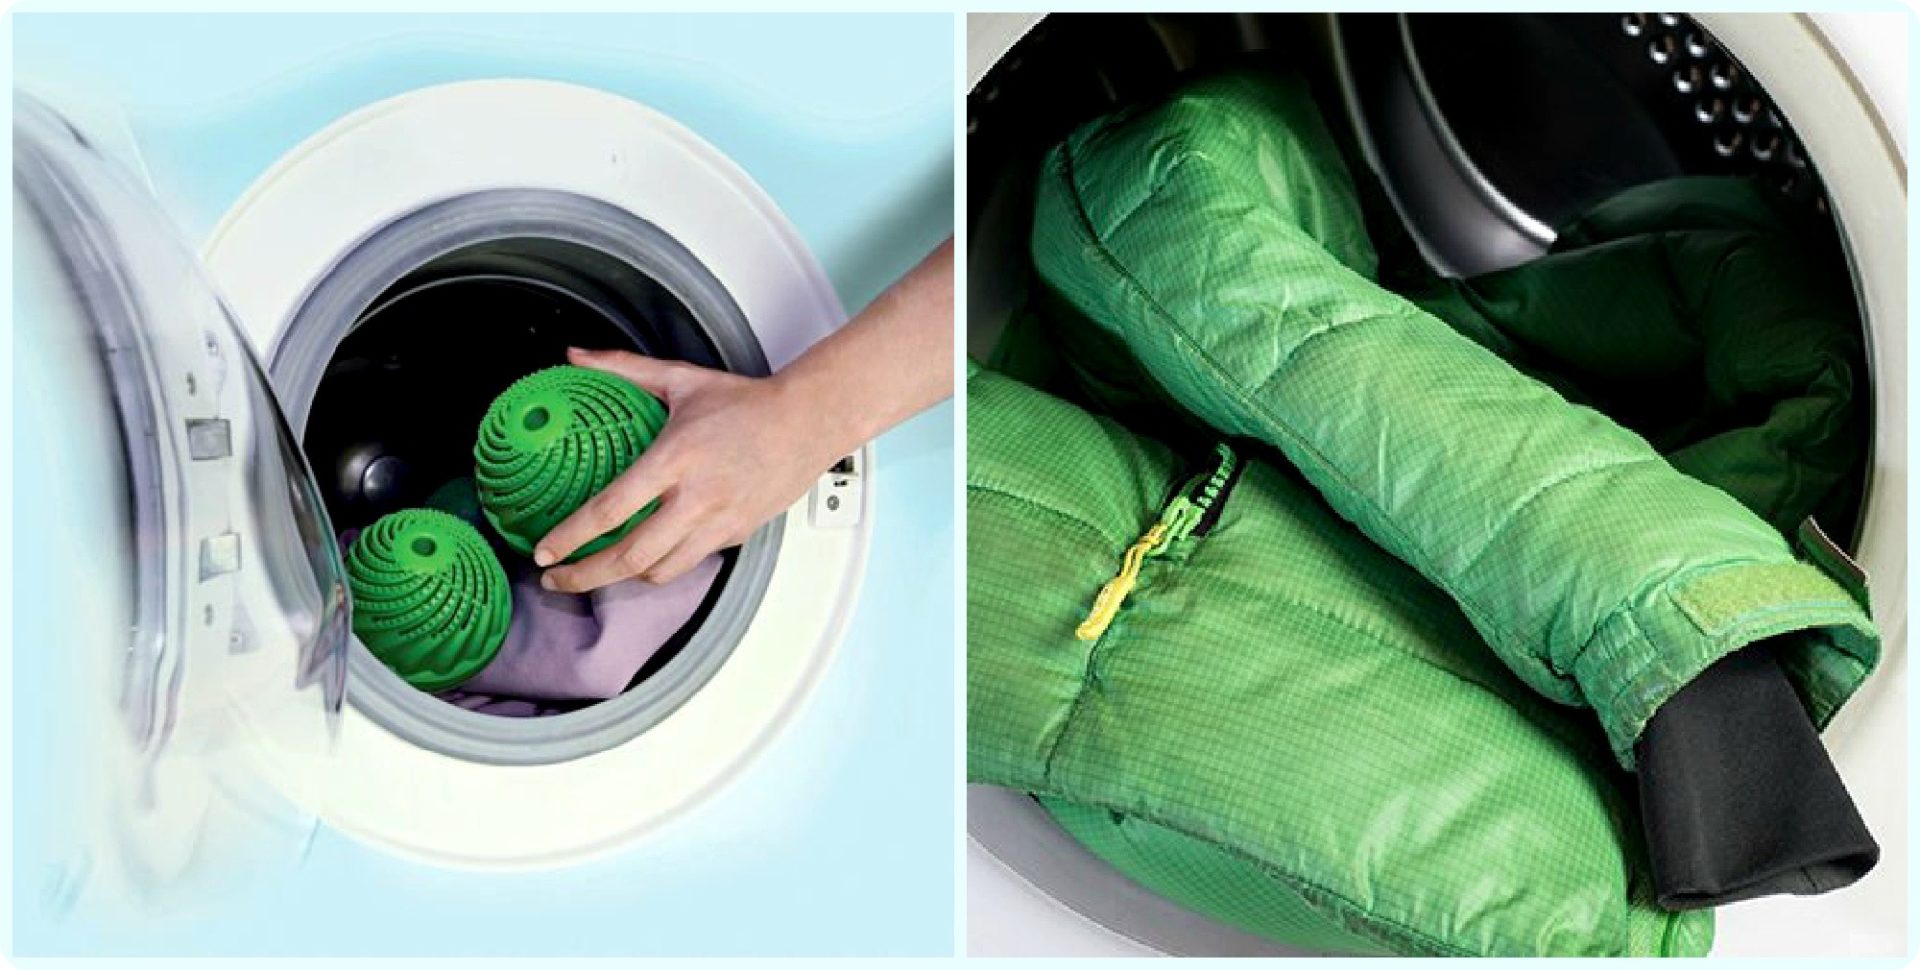 Как стирать пуховик в стиральной машине, чтобы не испортить?